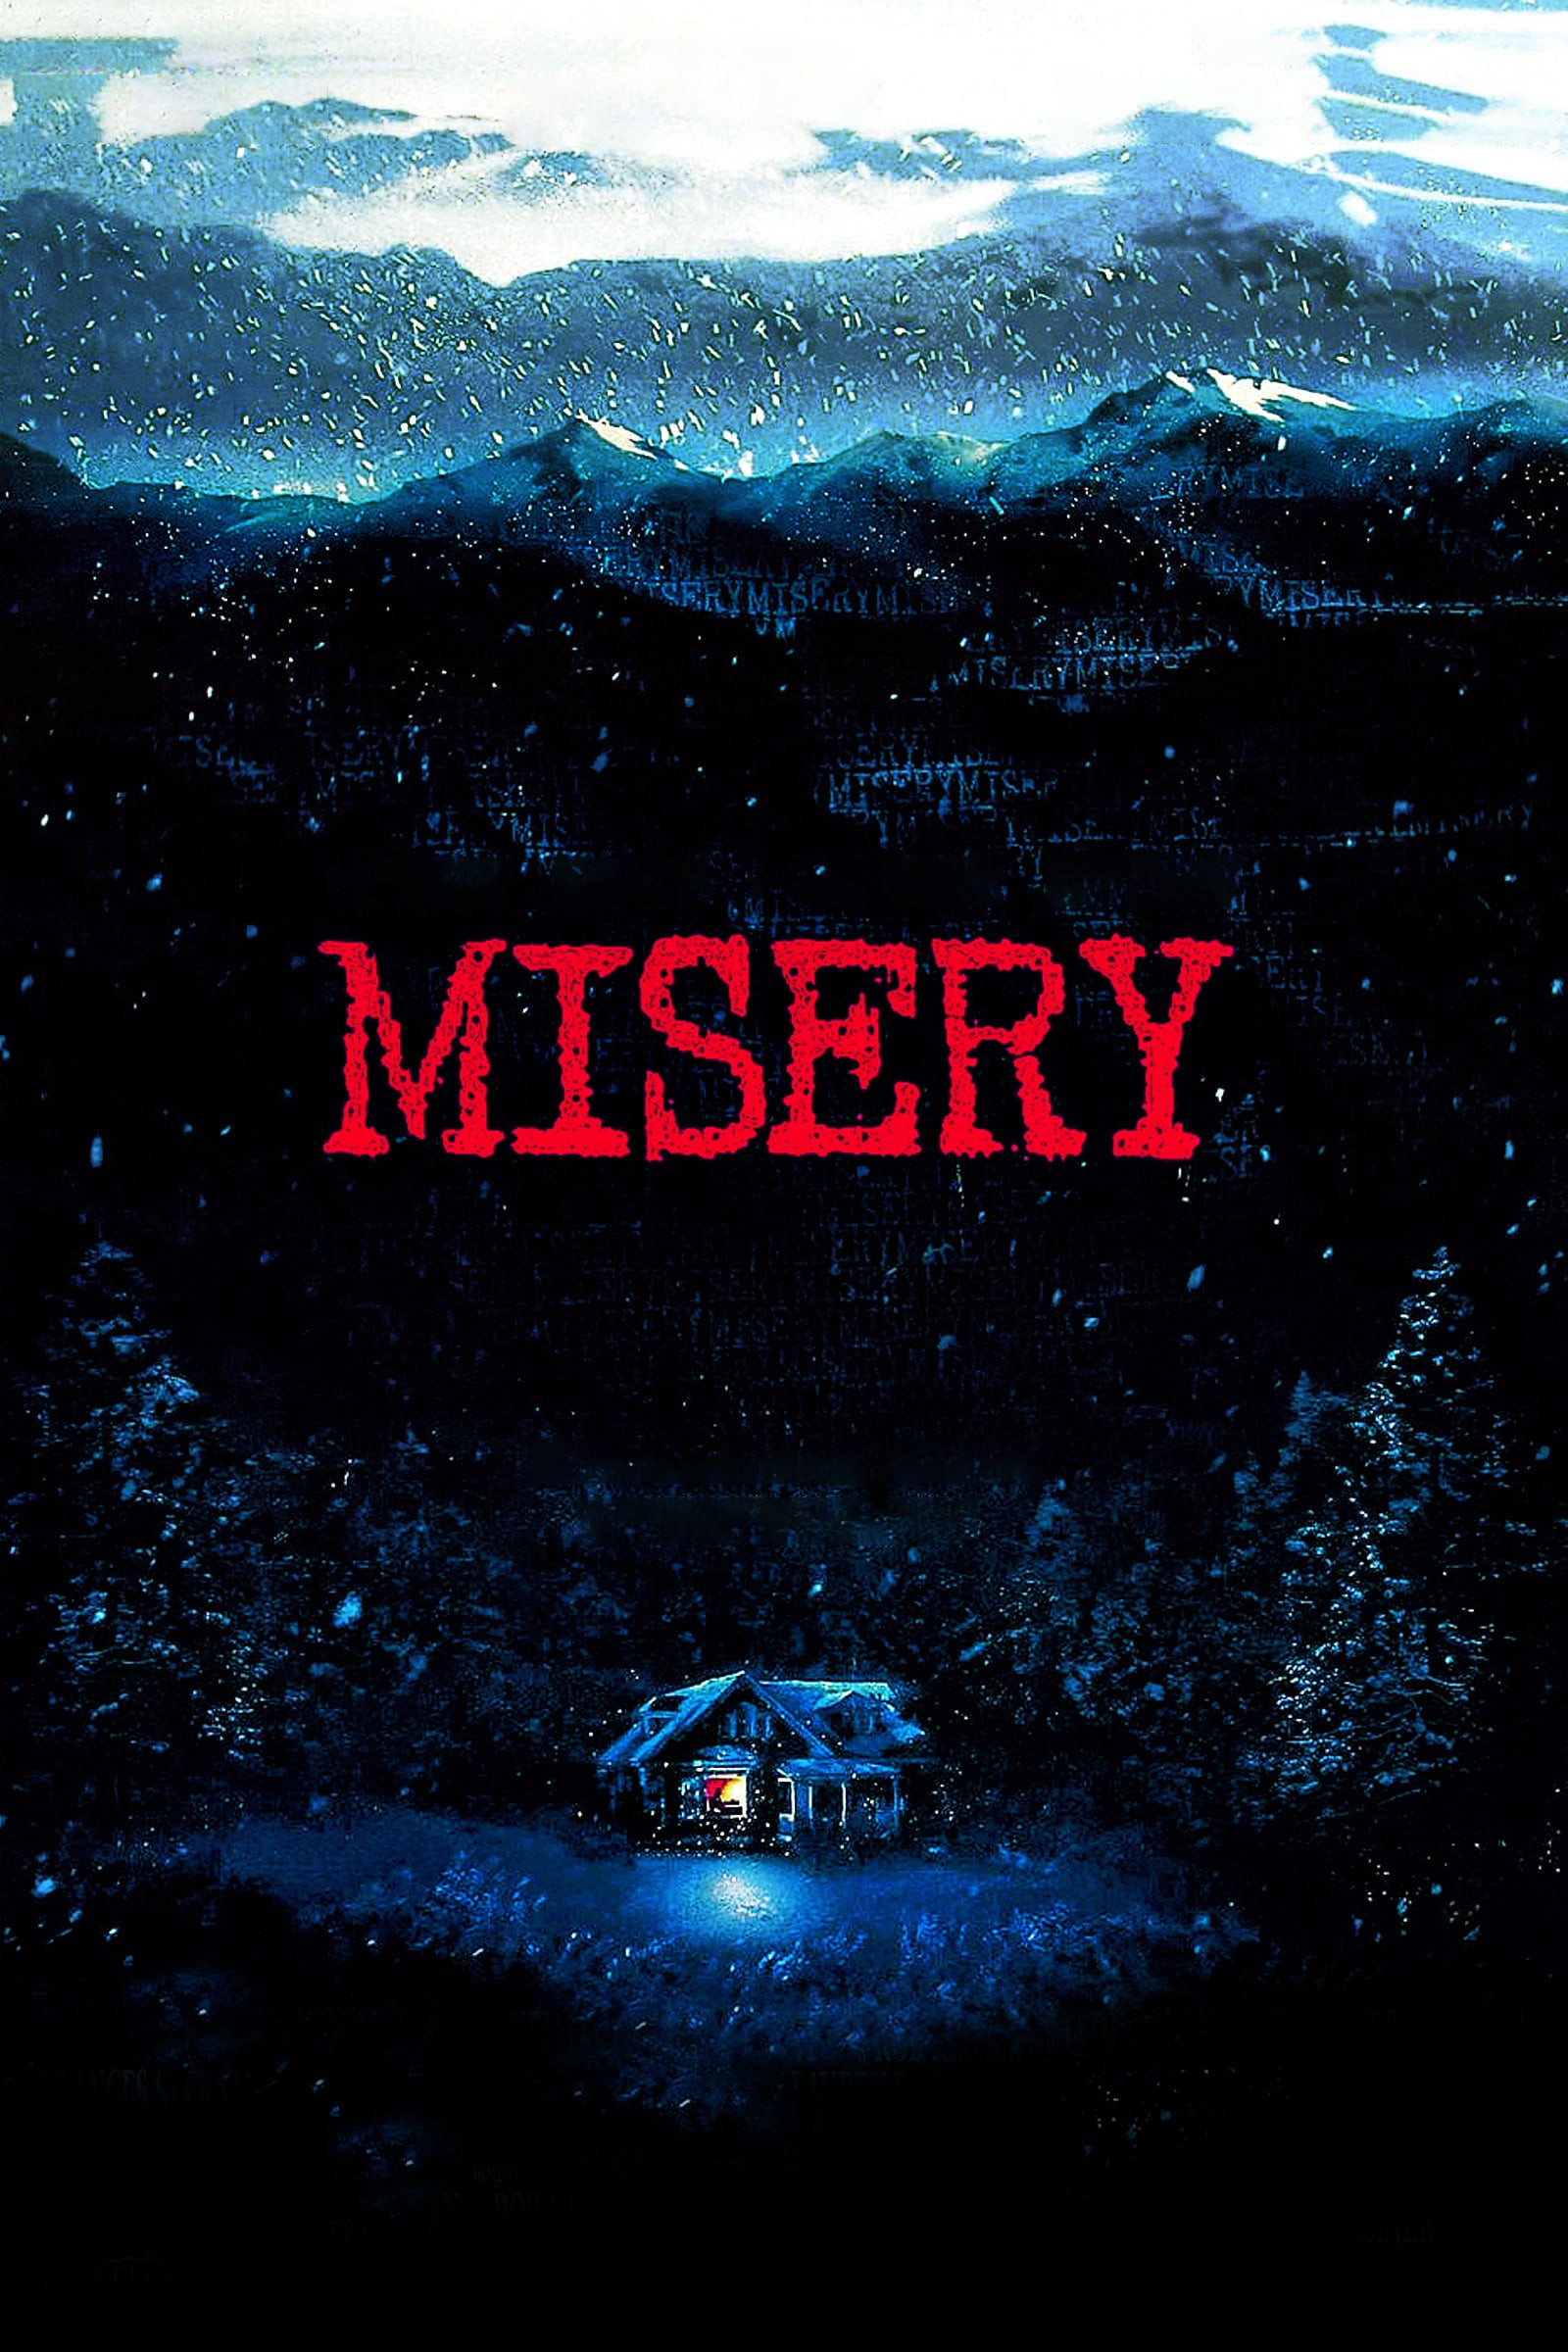 Misery - Misery (1990)